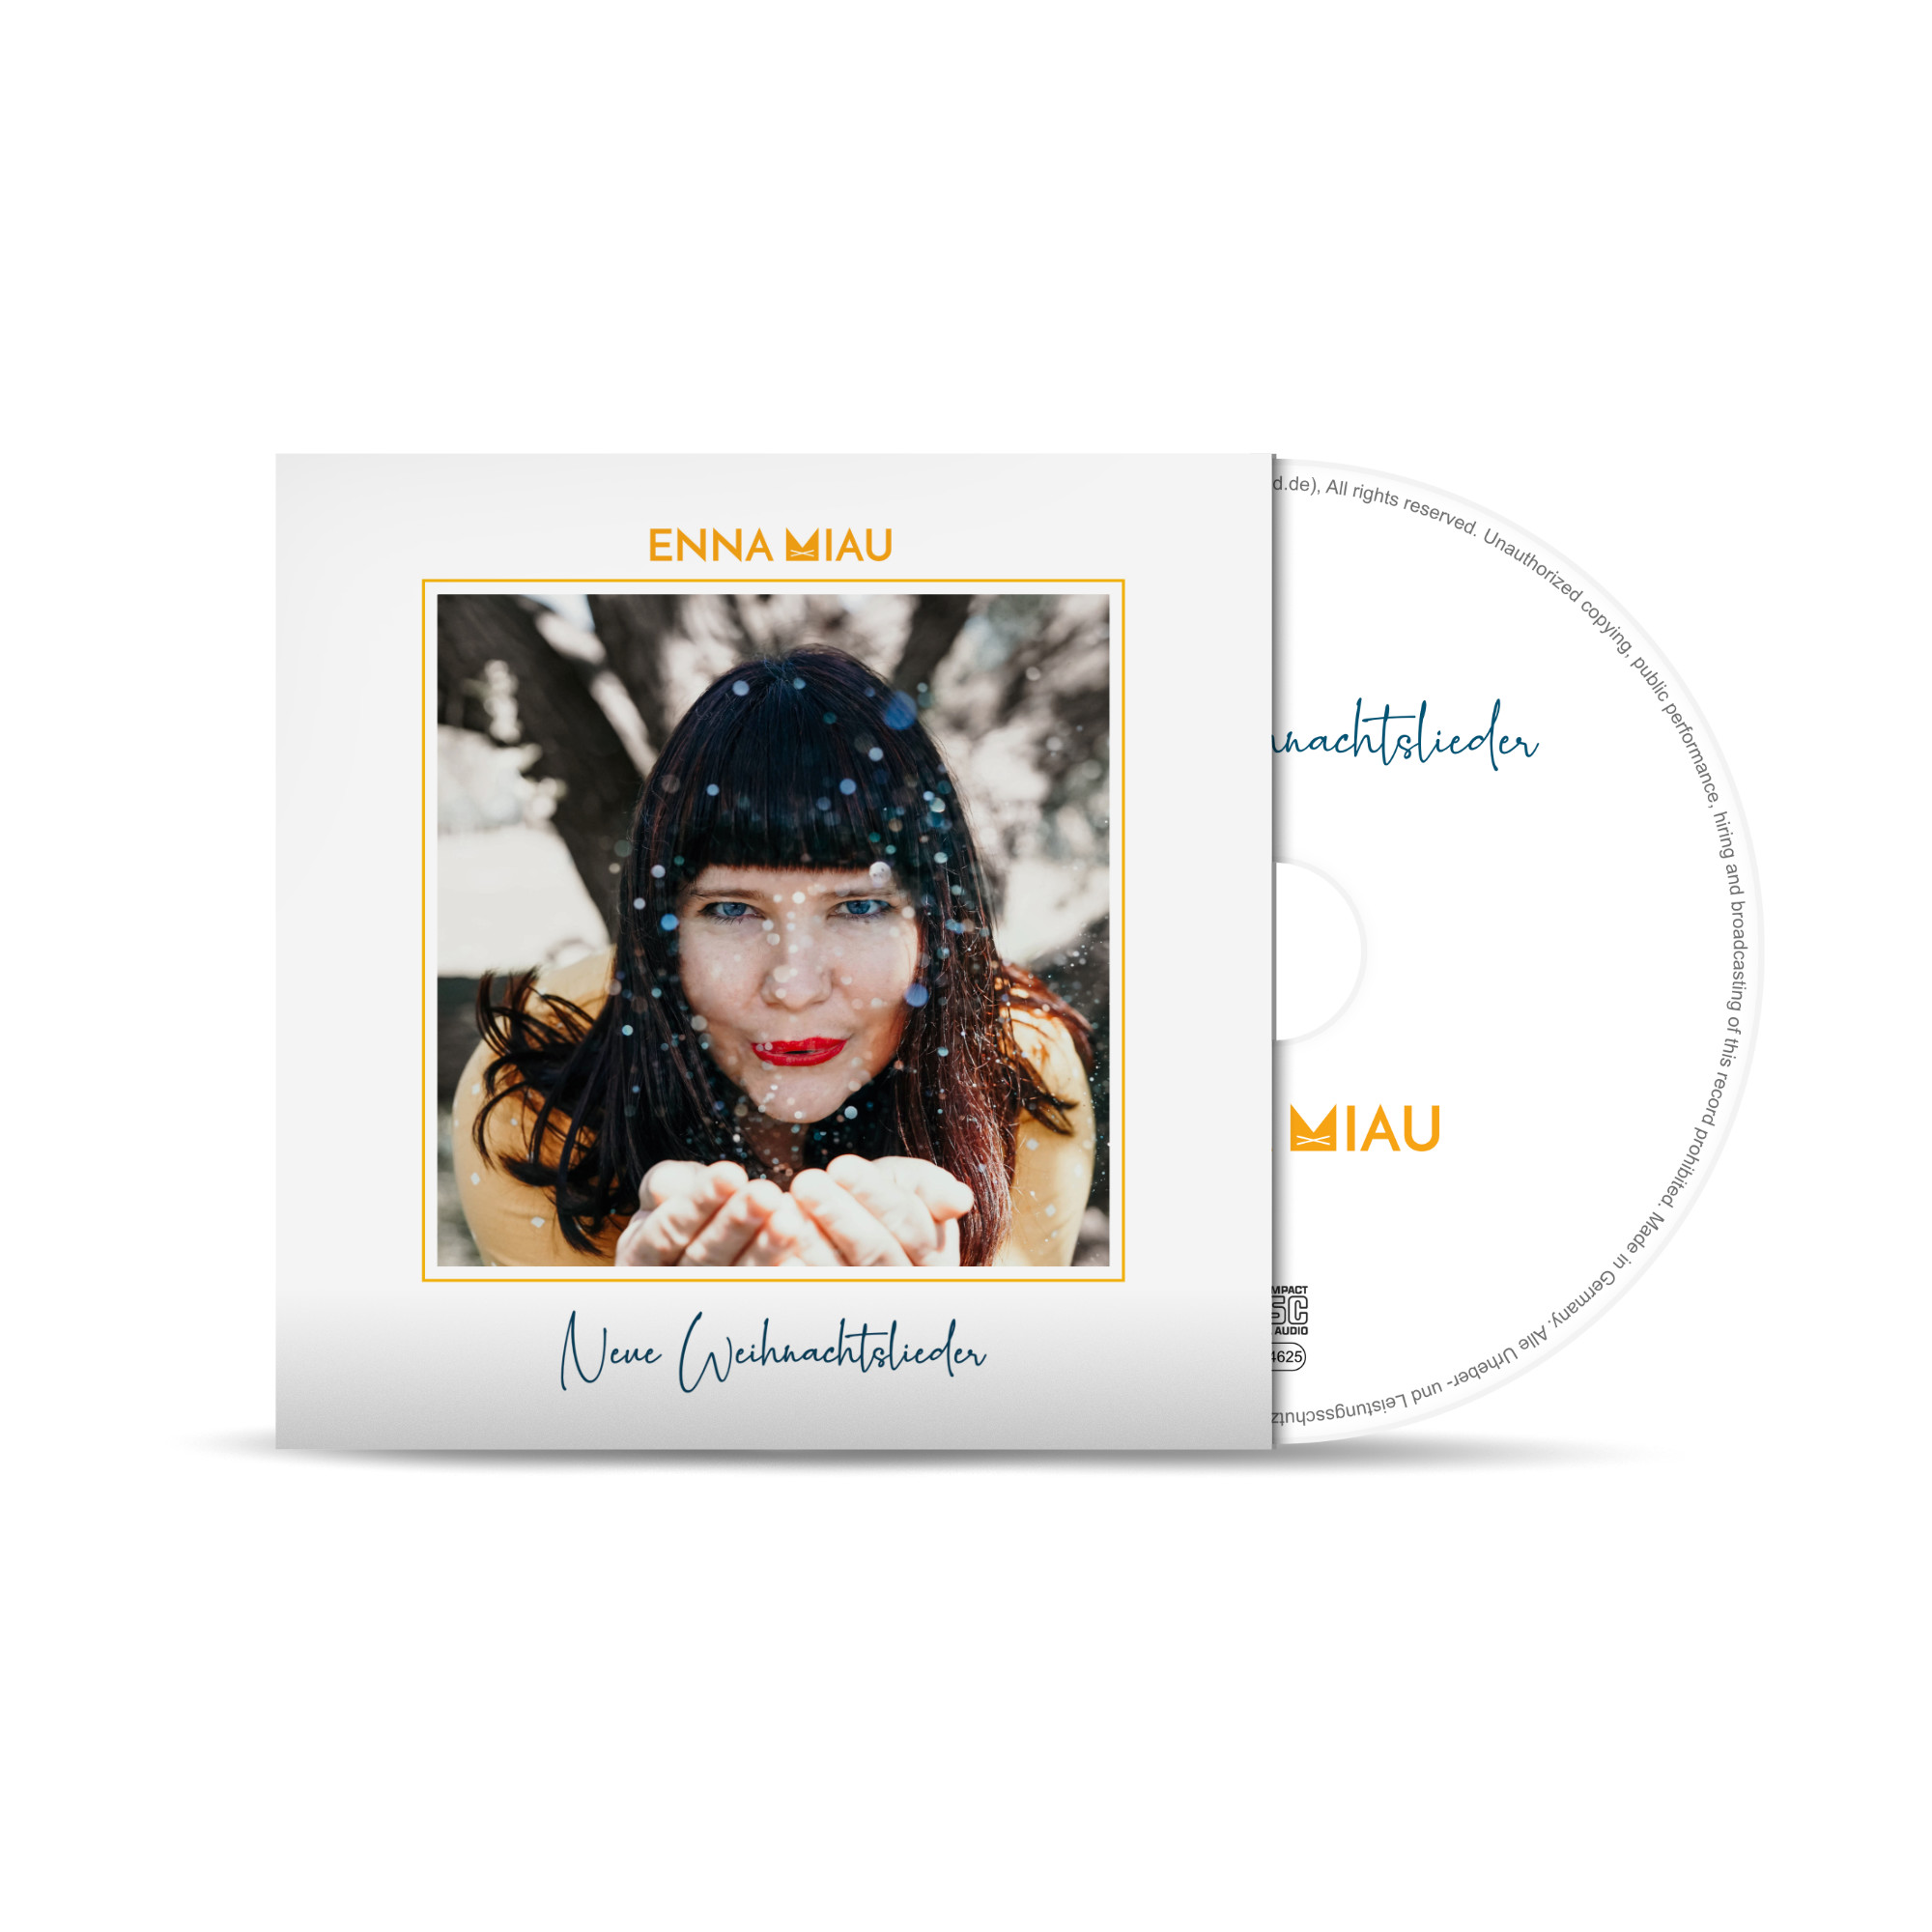 Cover von CD mit Enna Miau